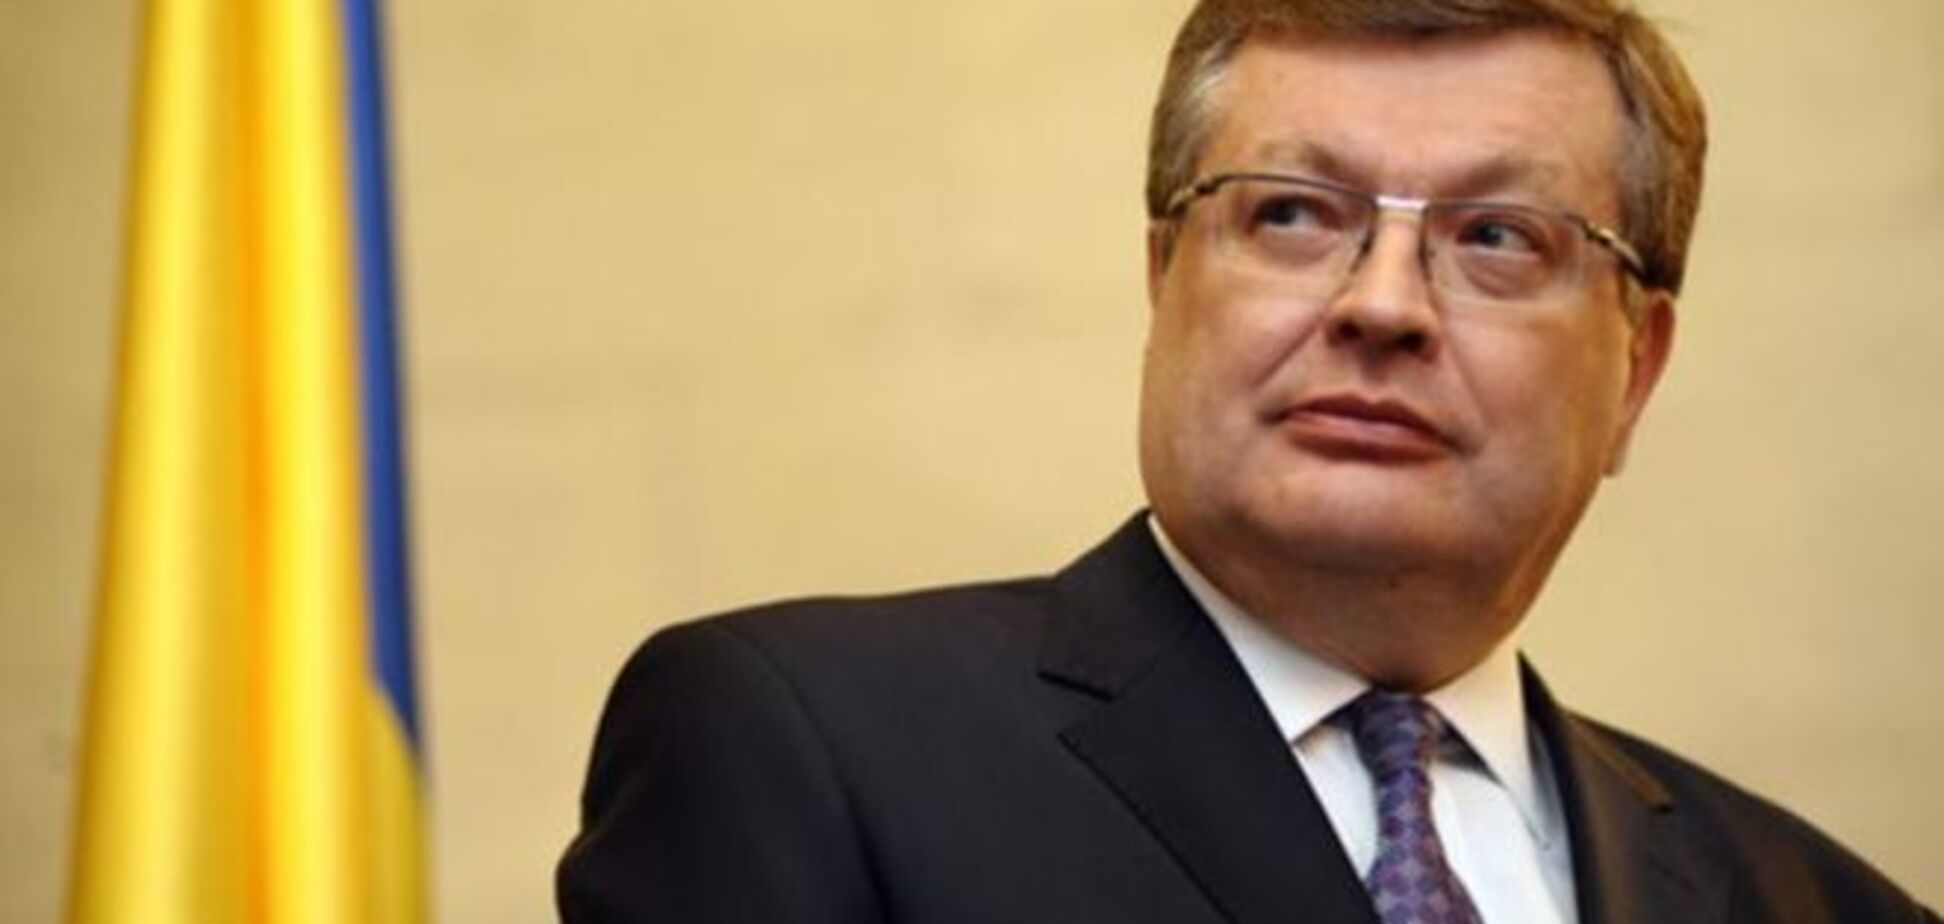 Грищенко: дипломатия должна перестать быть площадкой для пиара